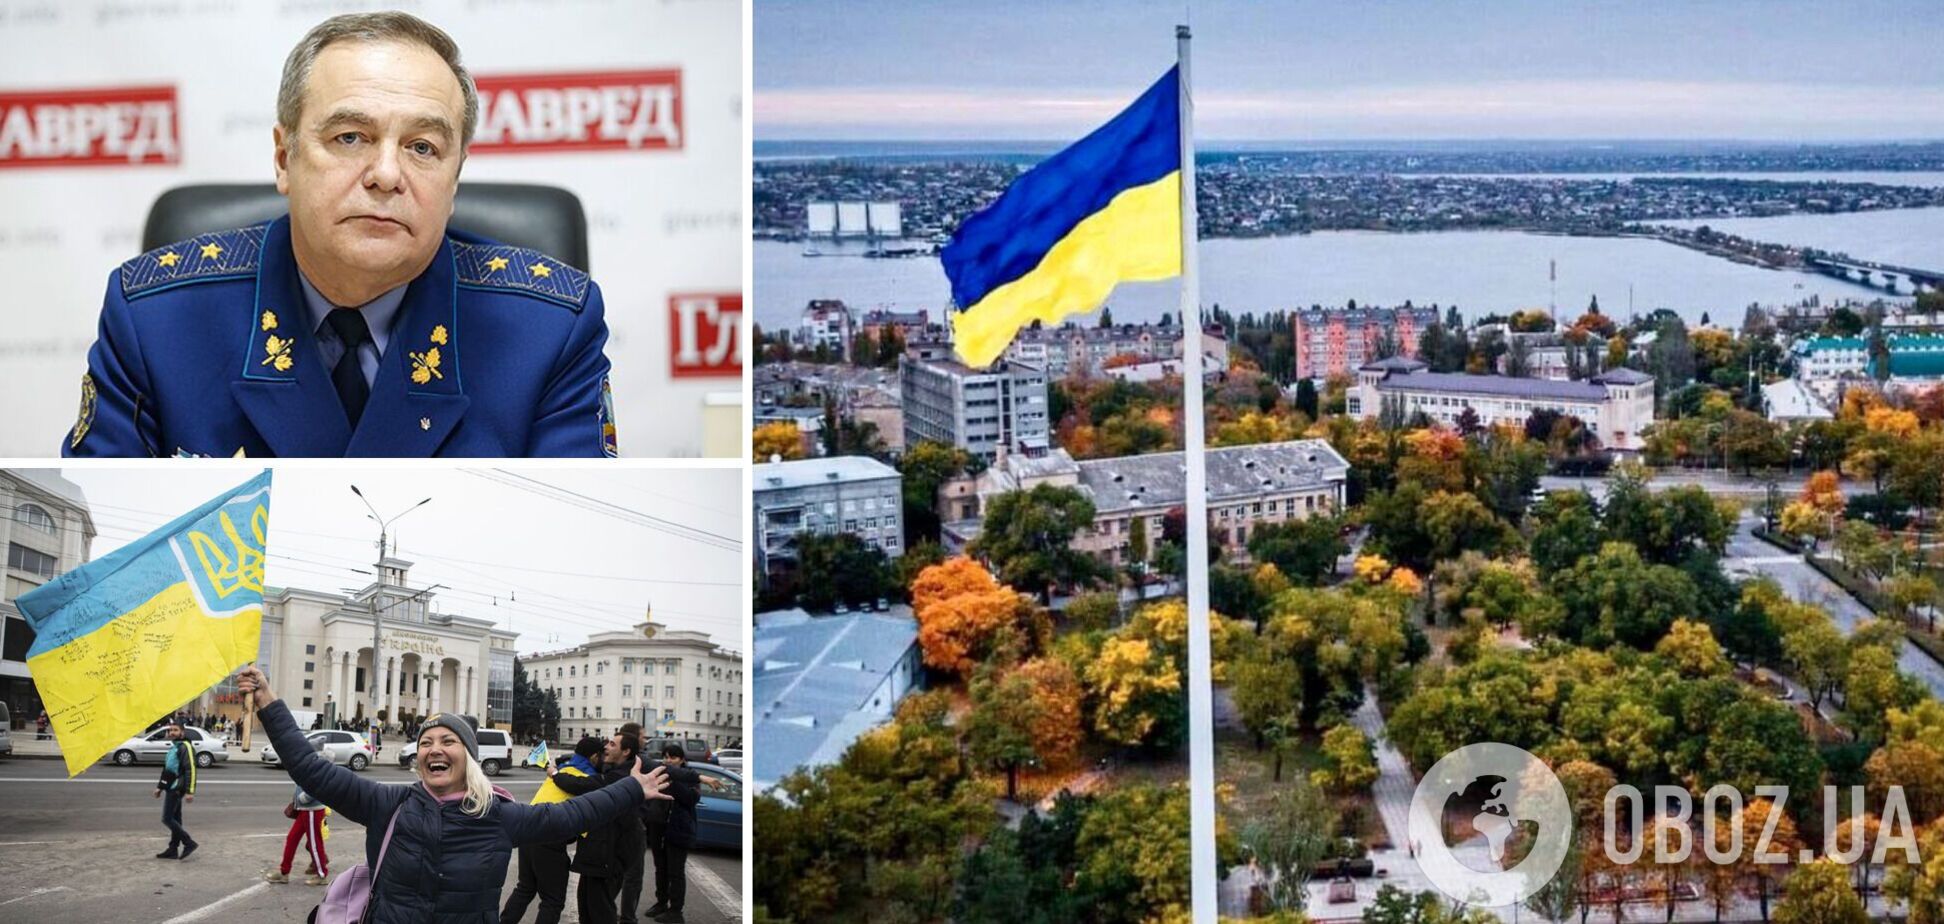 Генерал Романенко: армия Путина может выйти из Донецка, как вышла из Херсона. Интервью